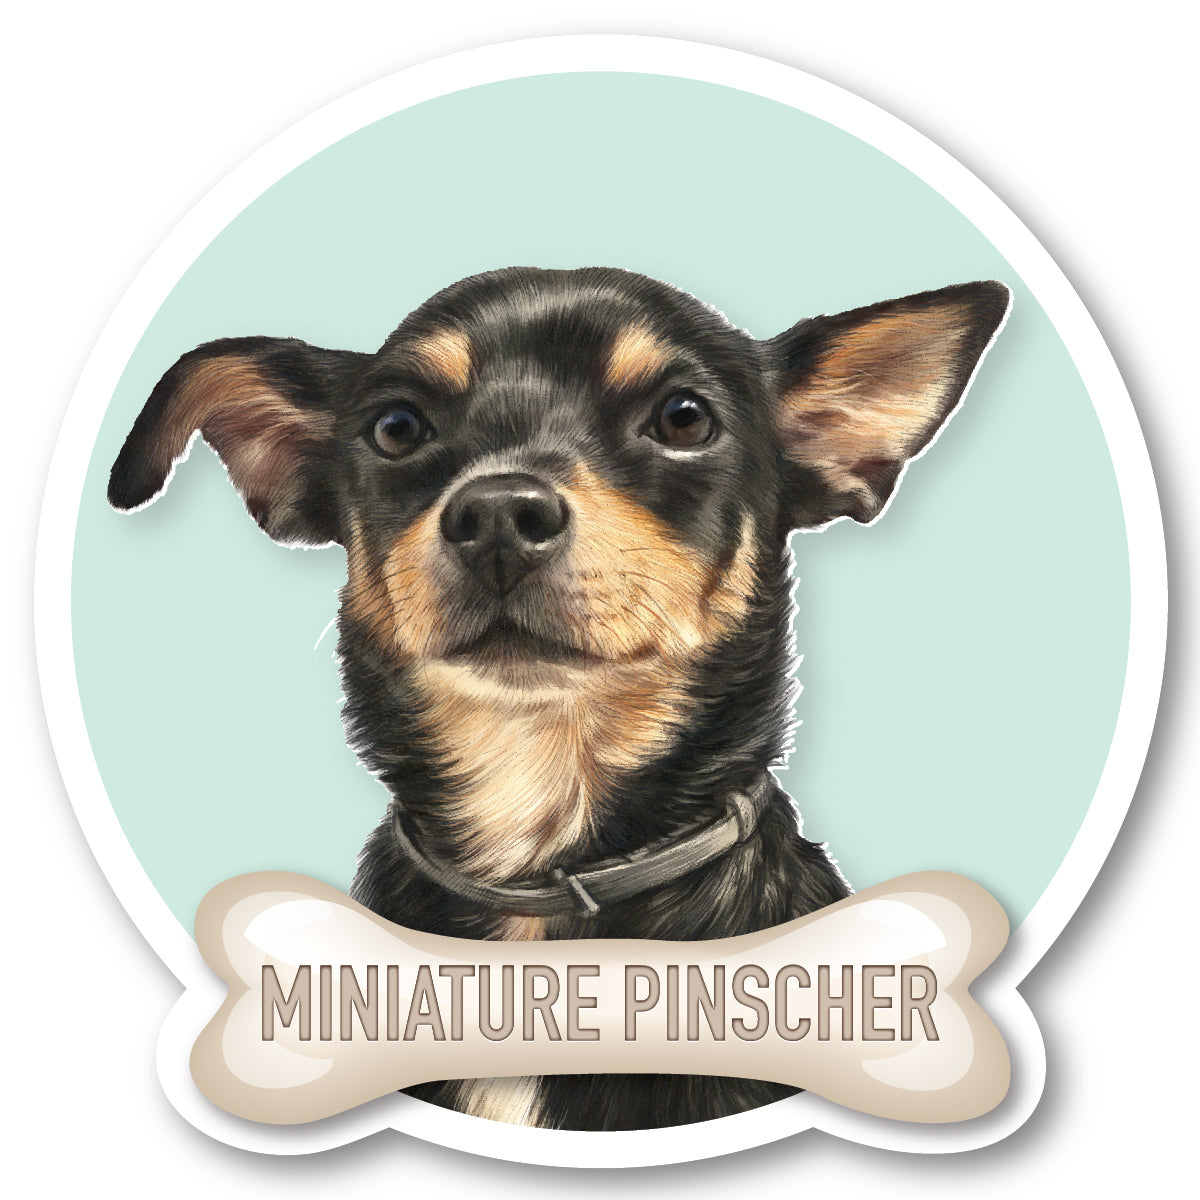 Miniature Pinscher 1 Vinyl Sticker